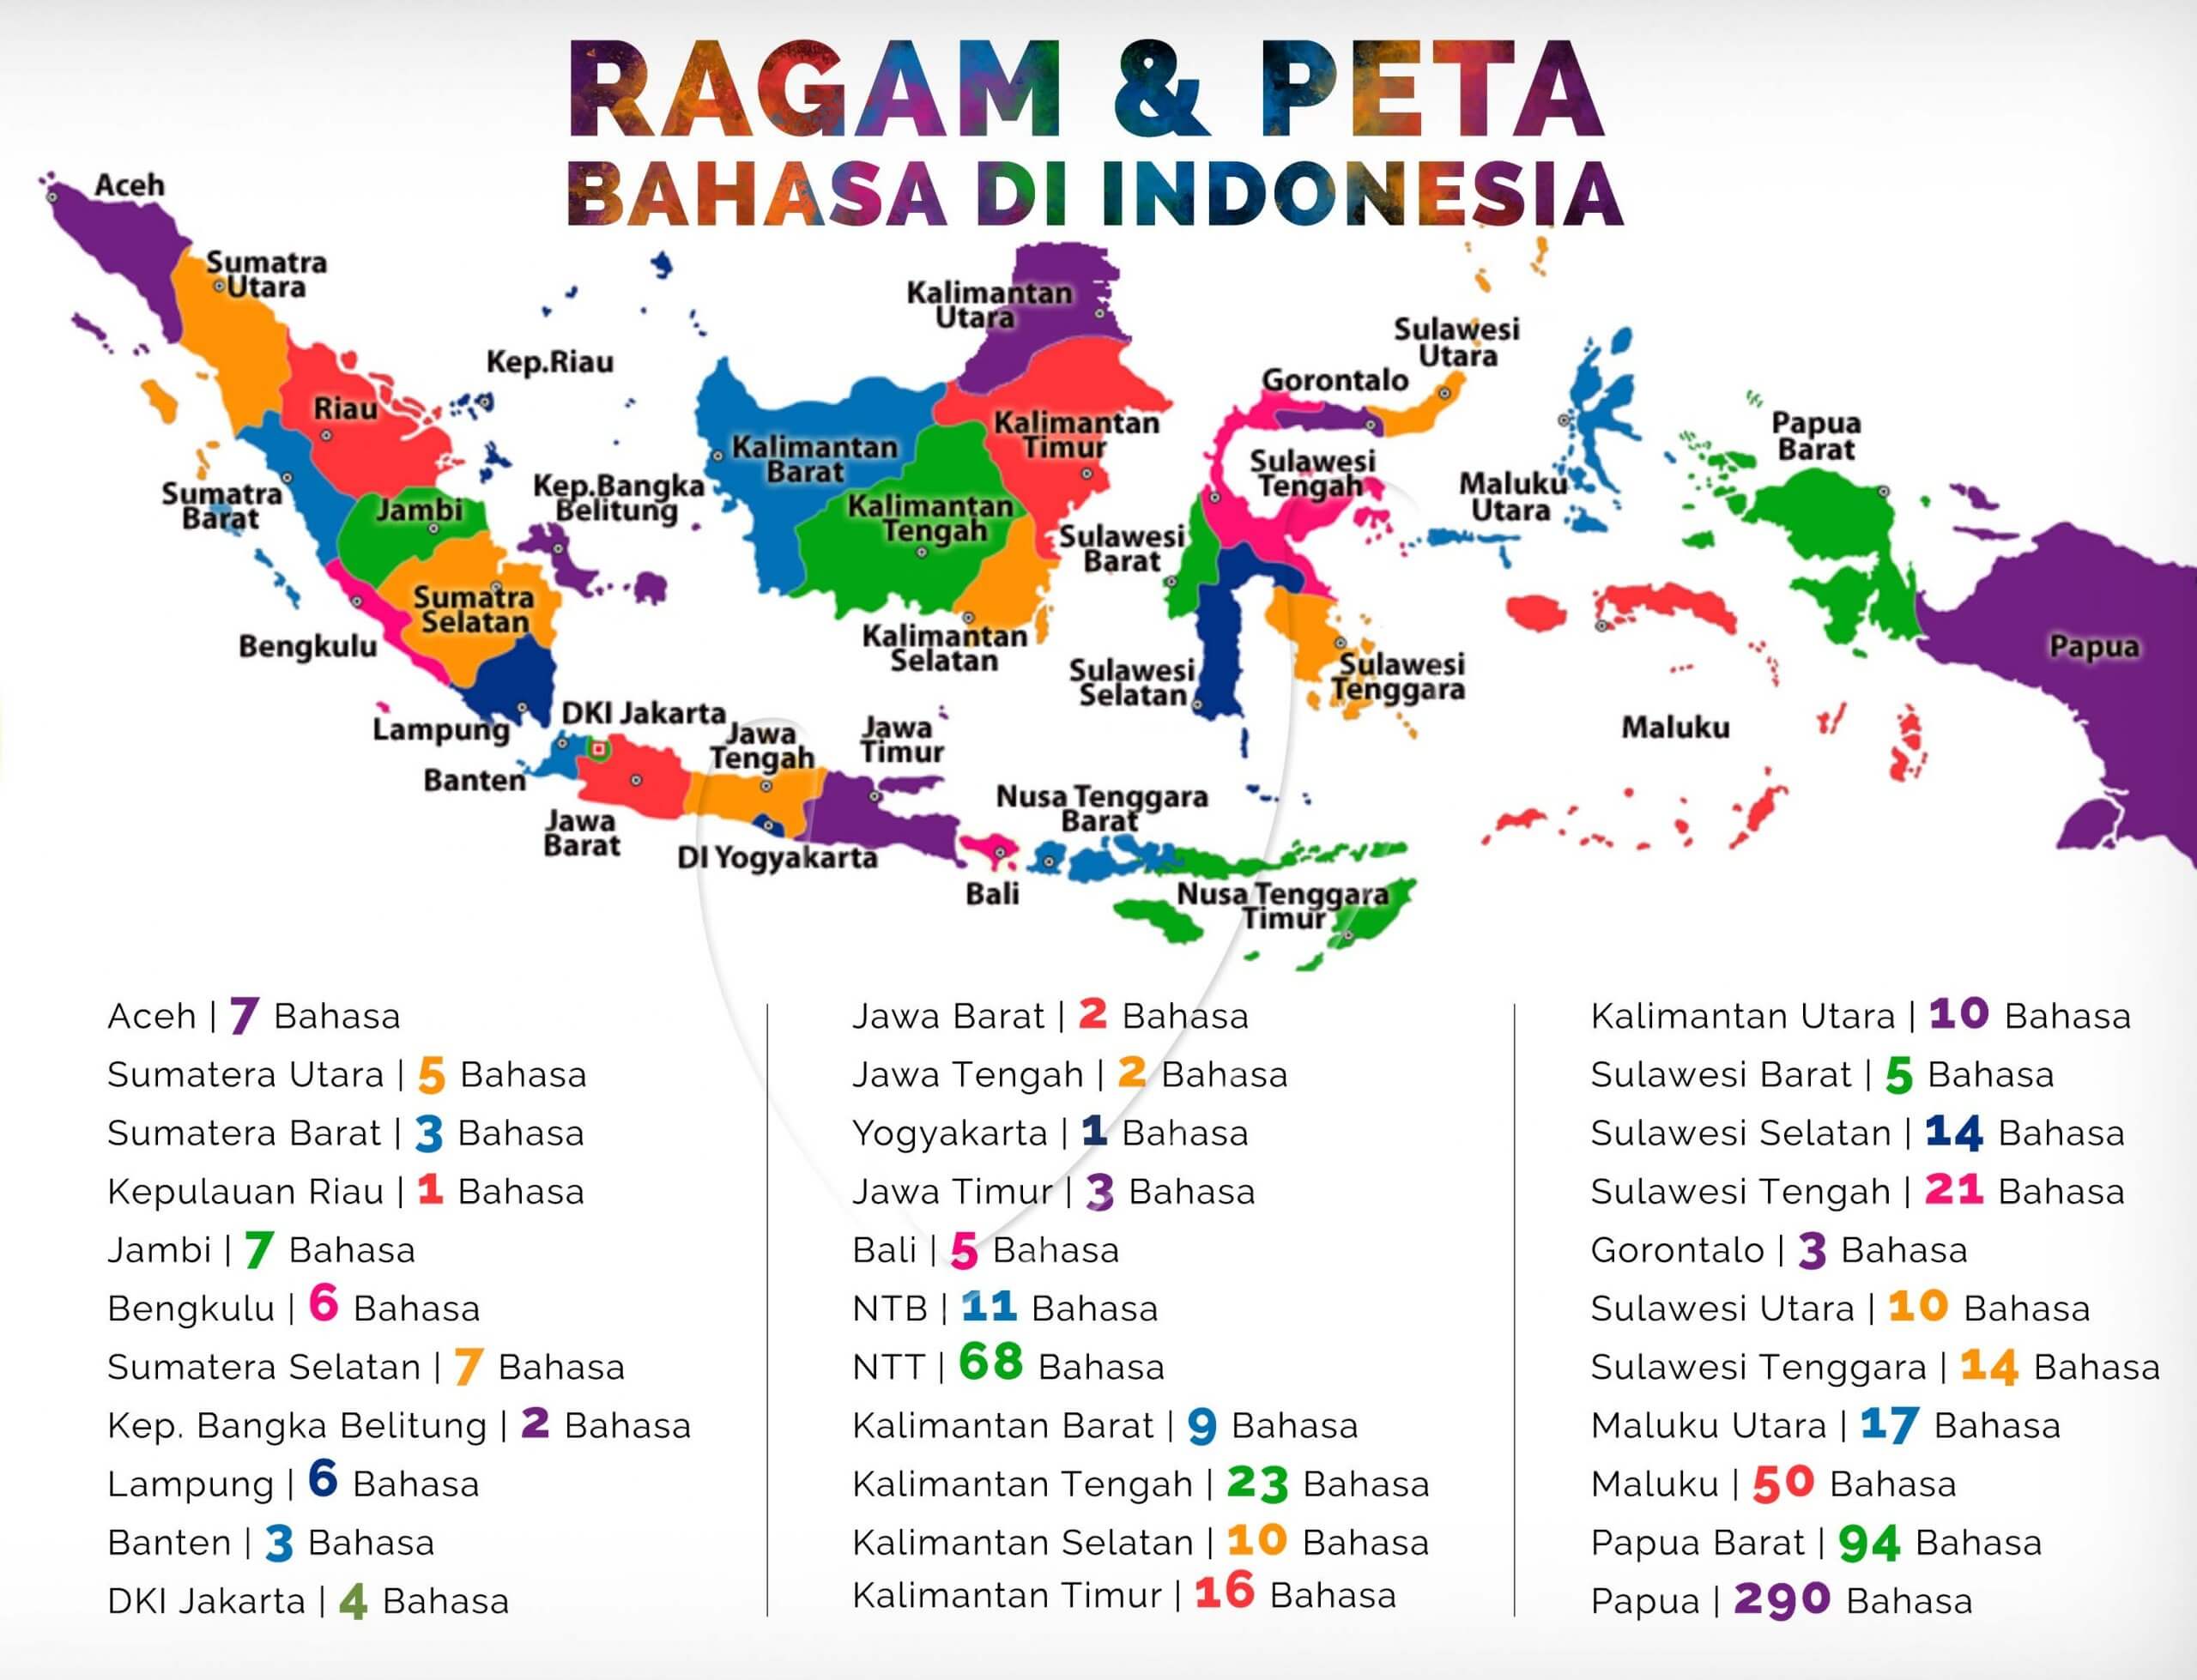 Ragam bahasa daerah di indonesia